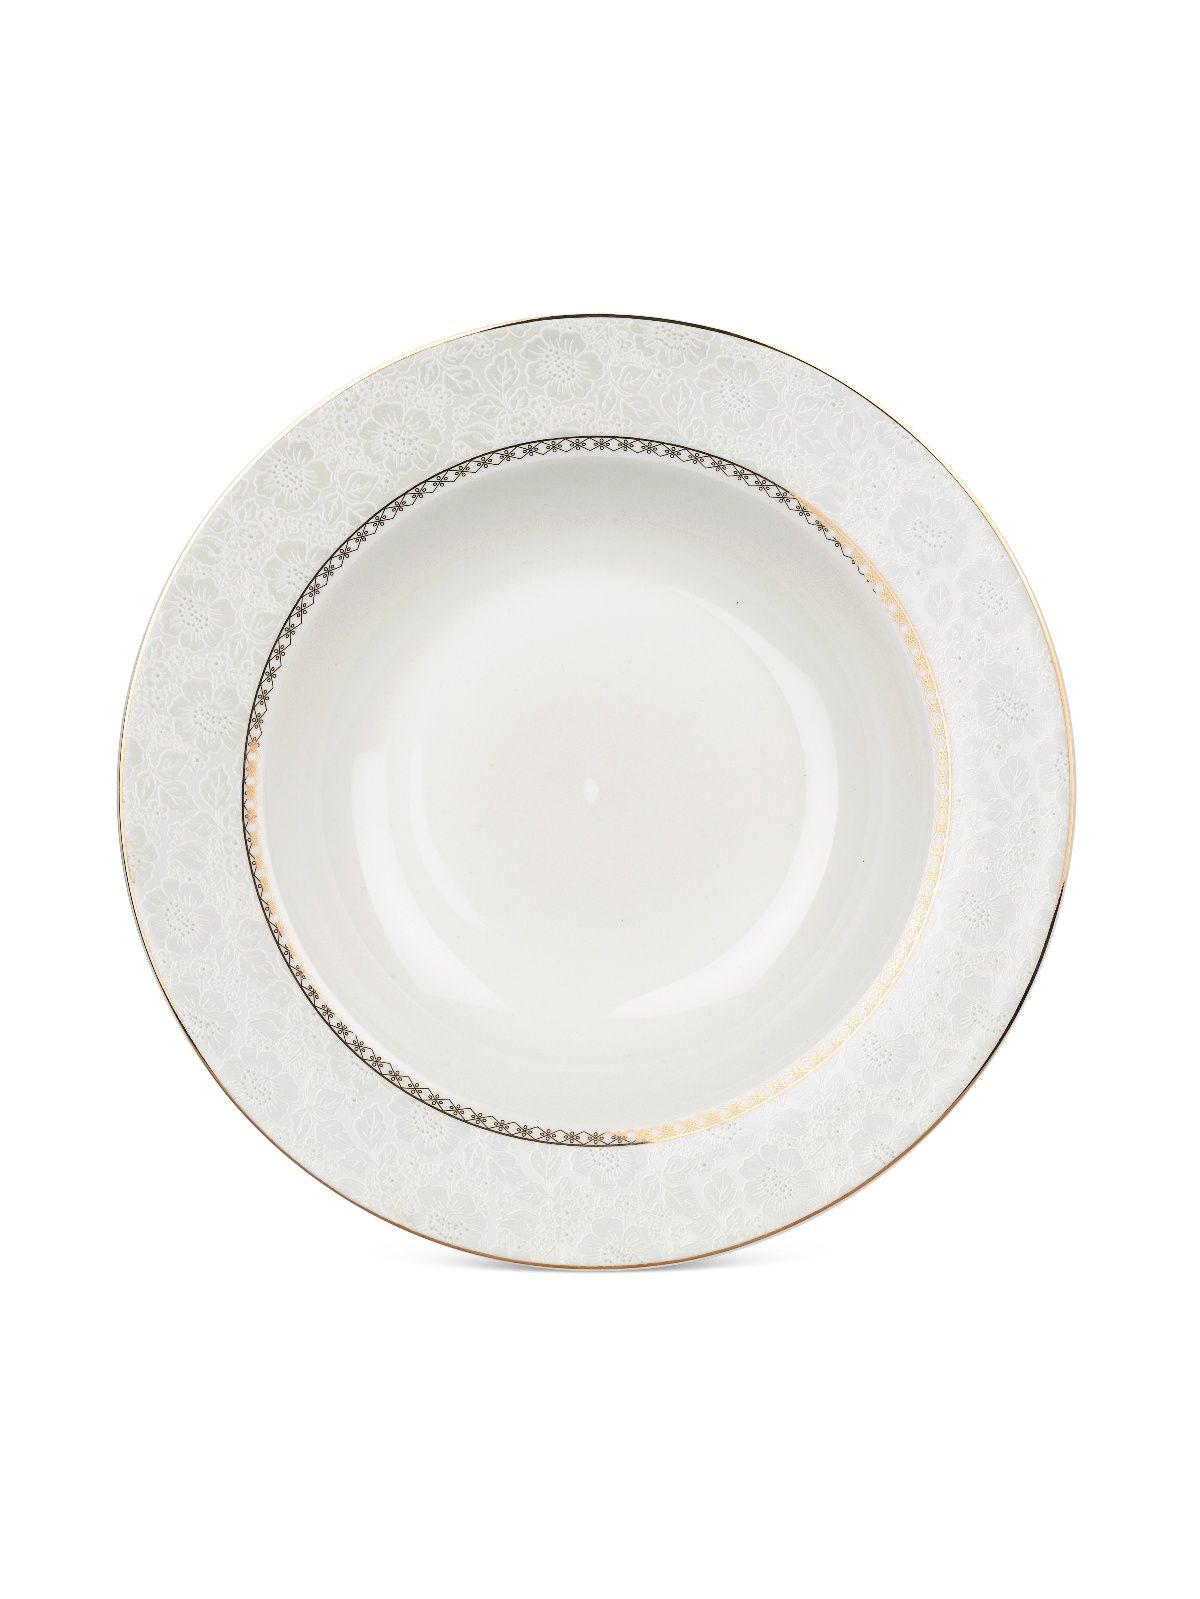 Тарелка суповая ELEGANCE 21.5см FIORETTA TDP612 тарелка суповая fioretta wood orange tdp441 20см